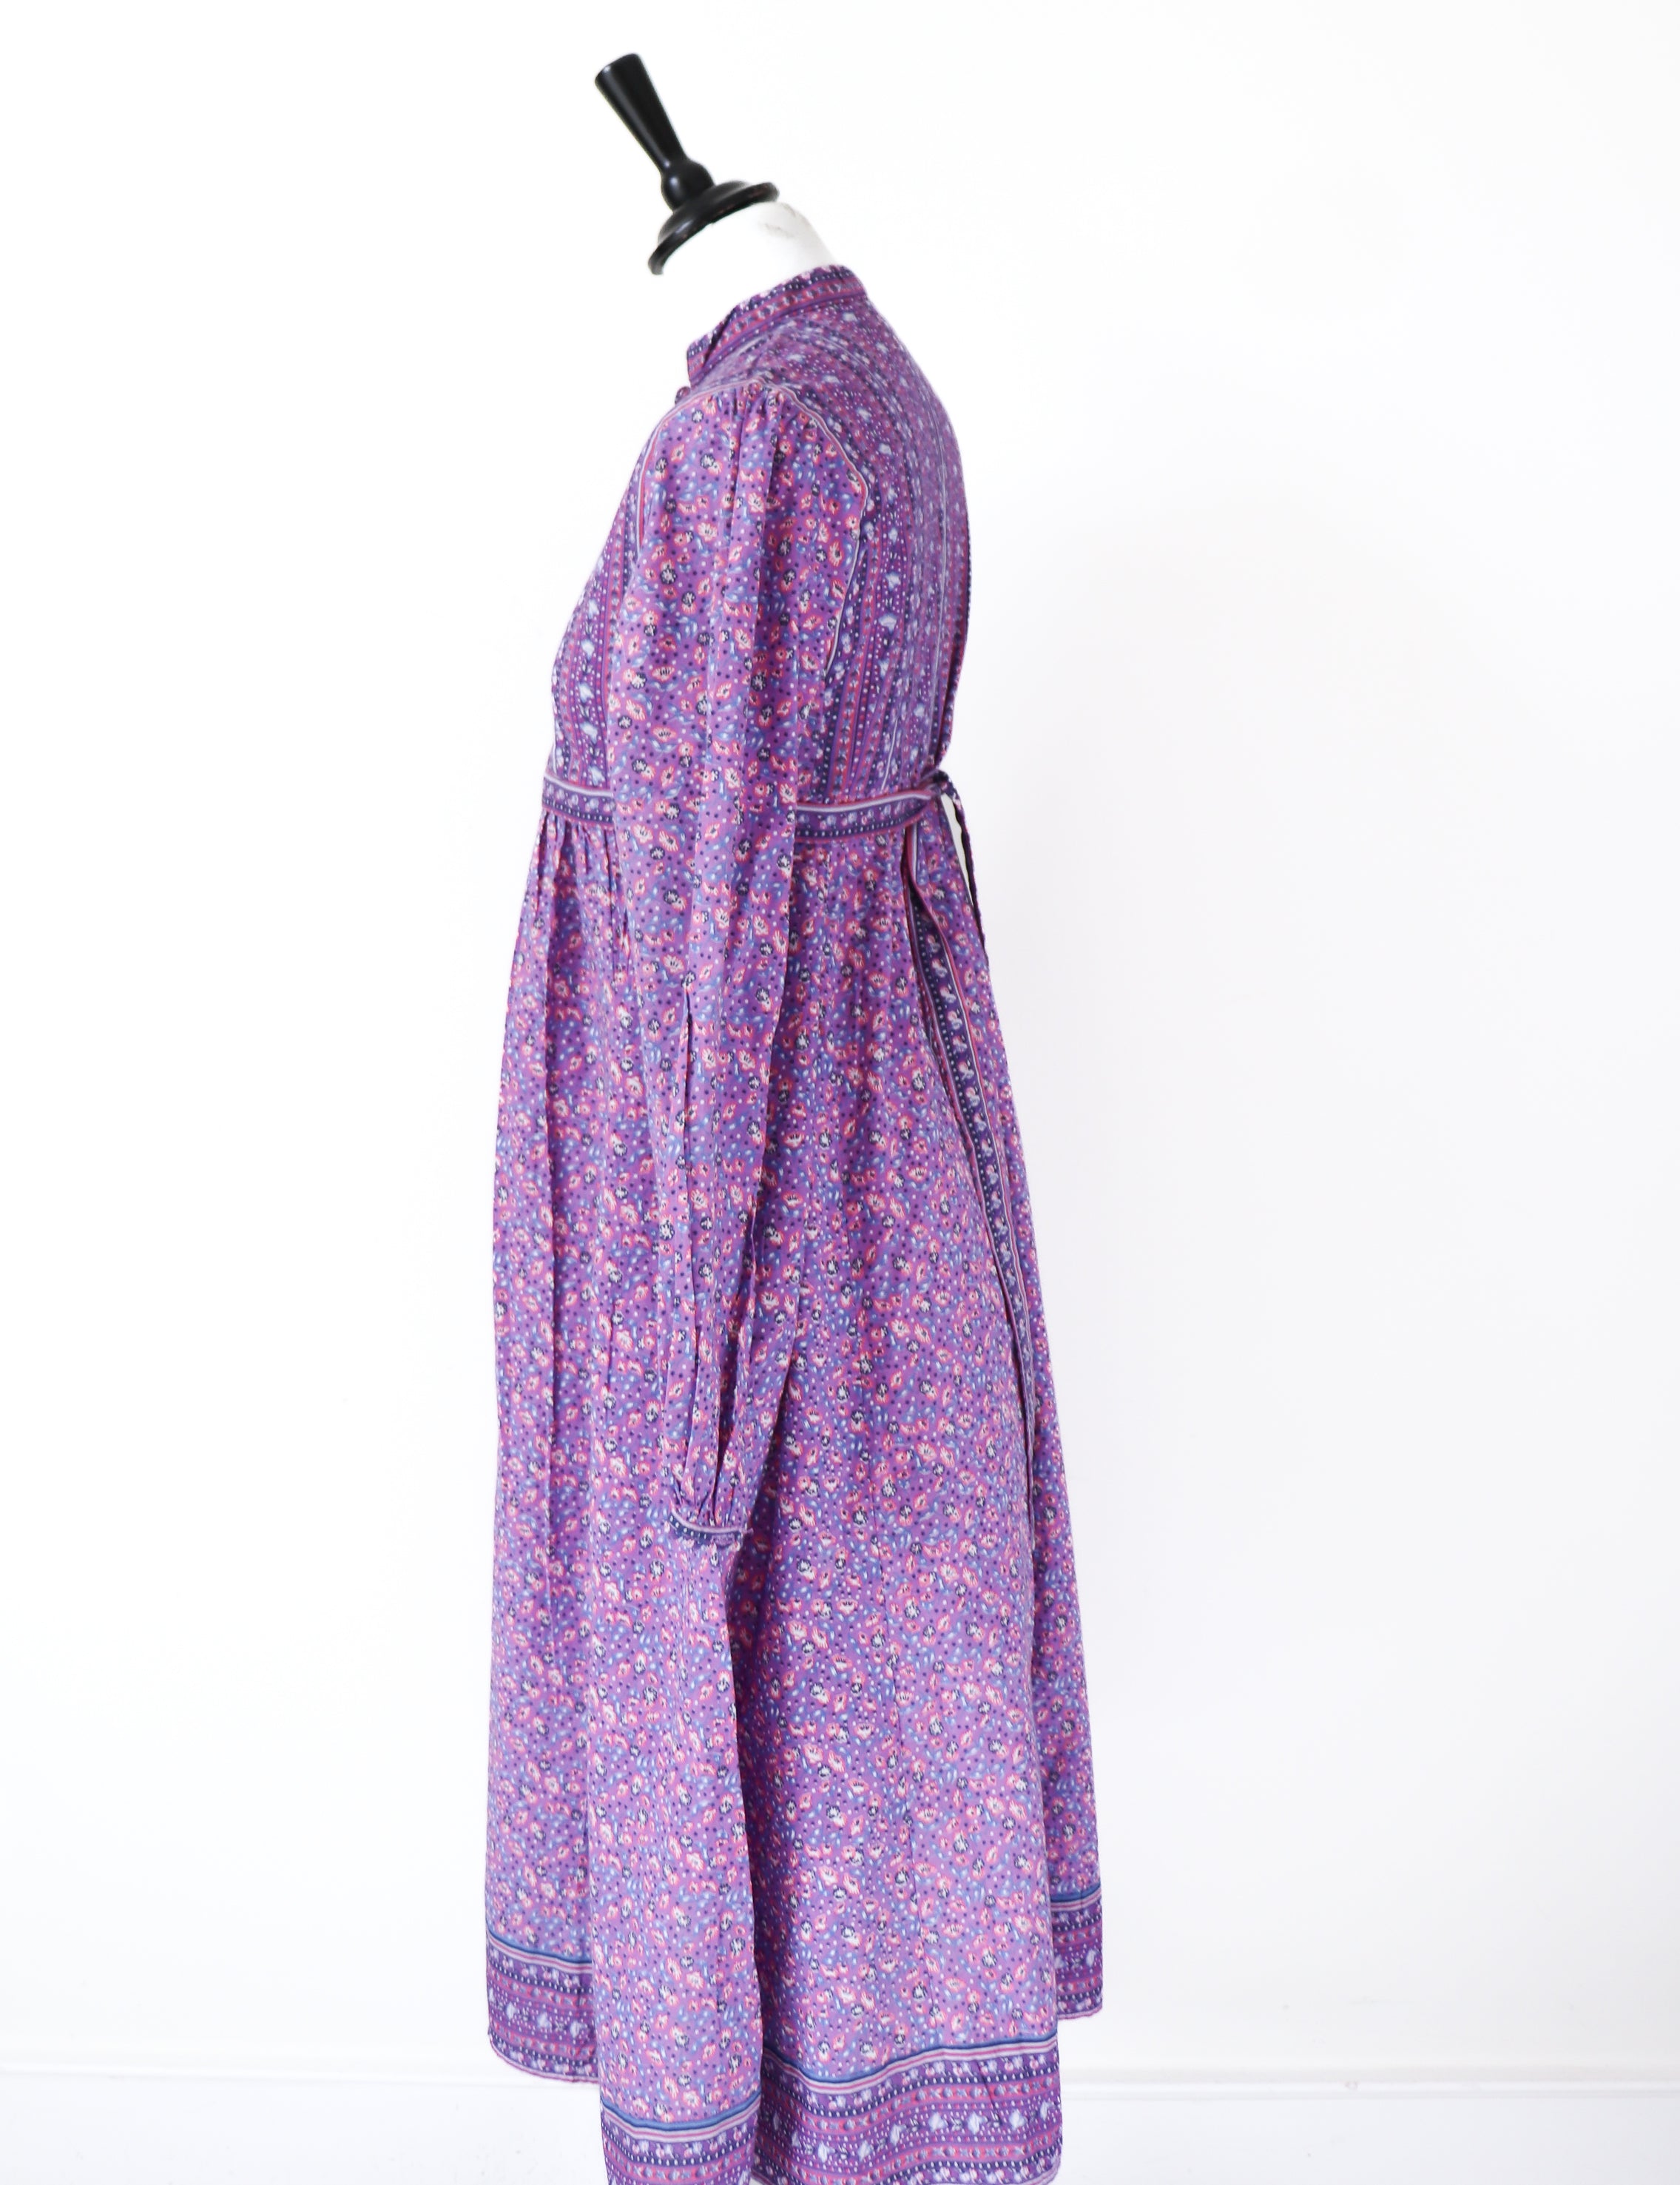 Vintage Block Print Cotton Dress - Empire Line - Purple - Fit S / M or UK 10-12